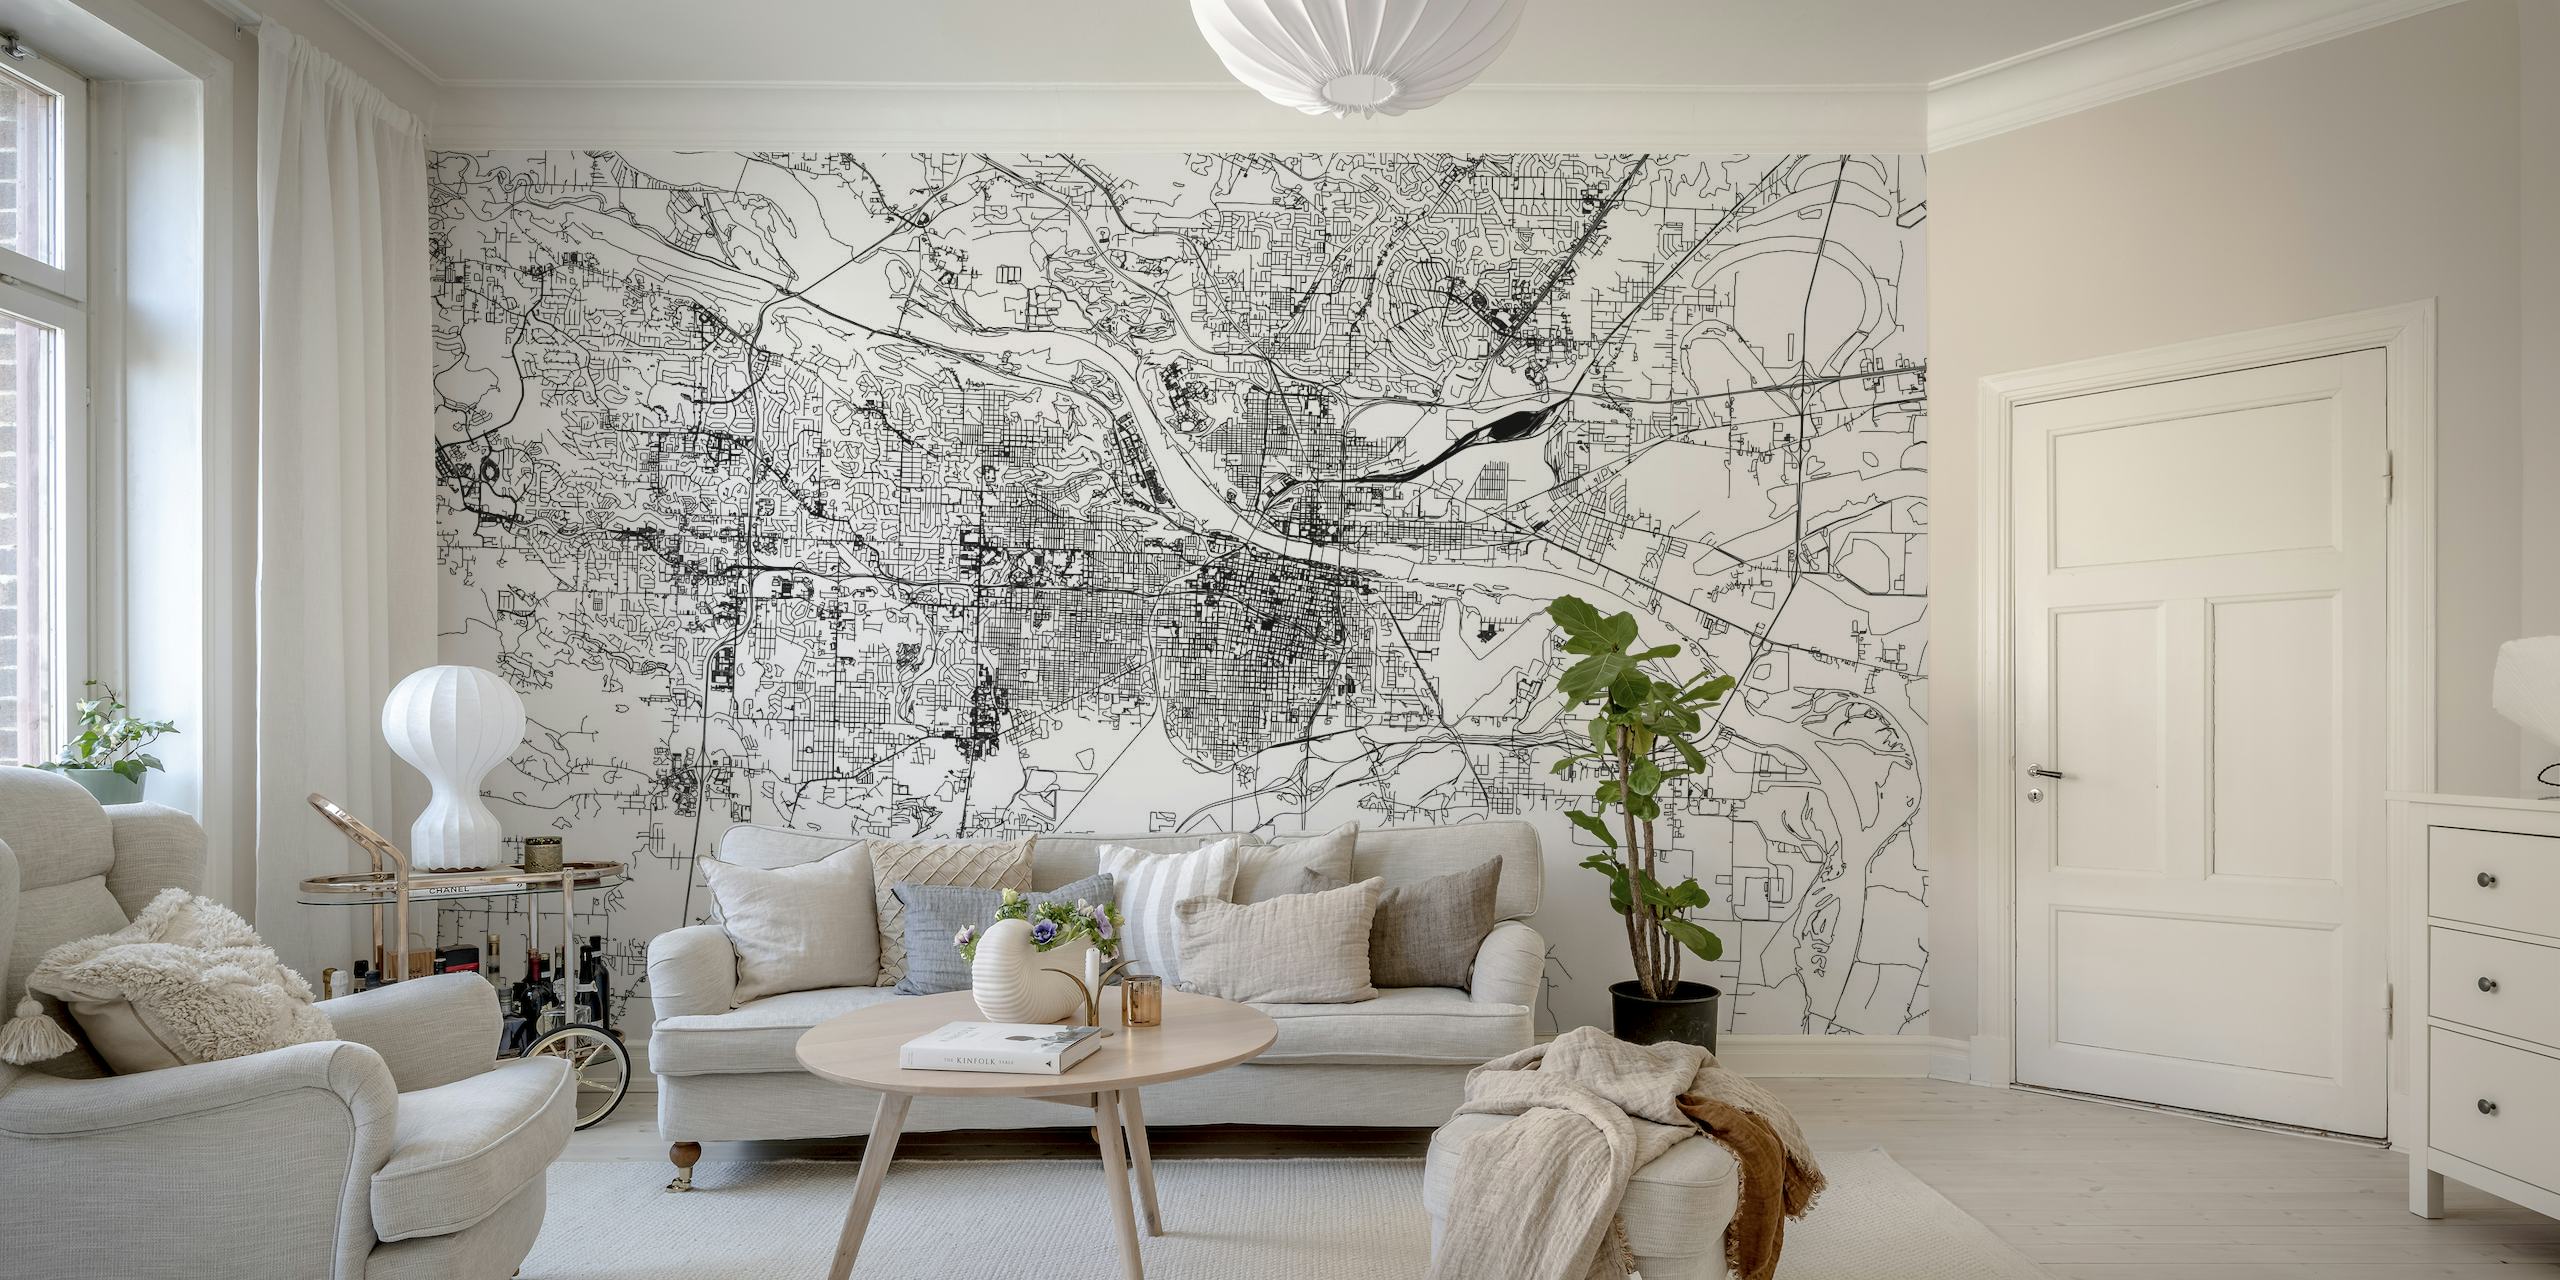 Monochromatyczna fototapeta przedstawiająca mapę Little Rock ze szczegółowym układem ulic